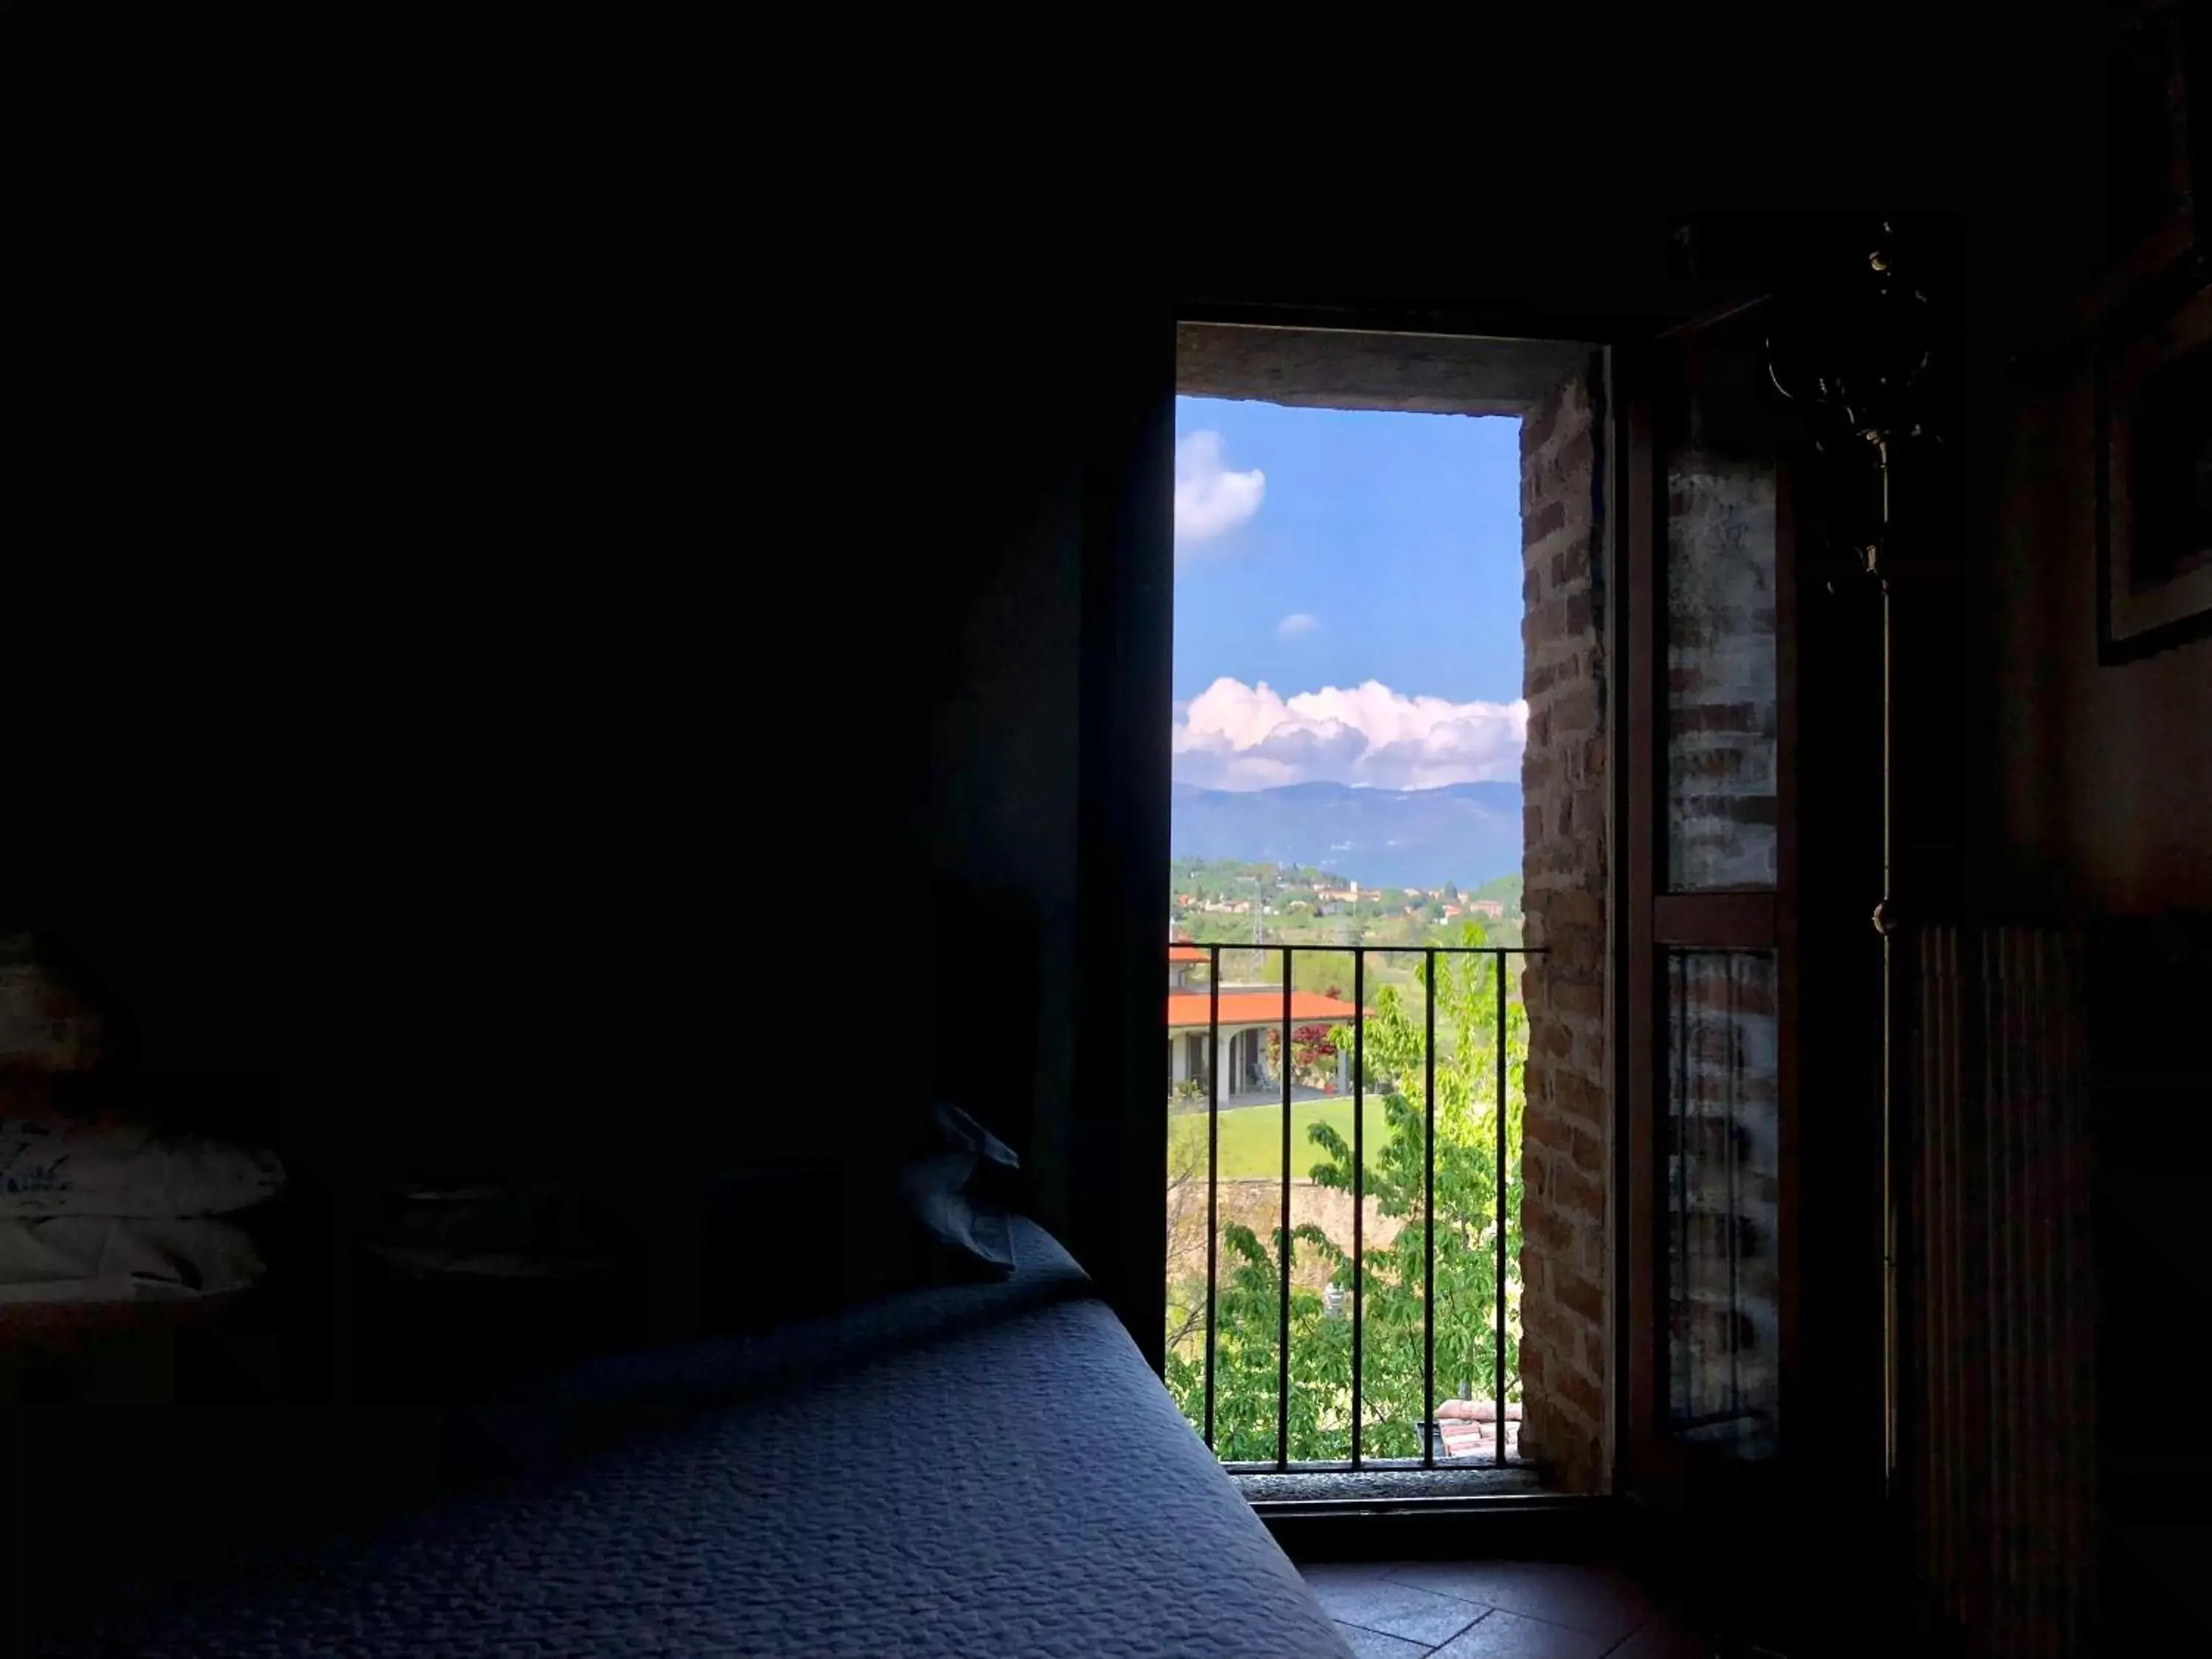 Mountain view in Castello di Cernusco Lombardone